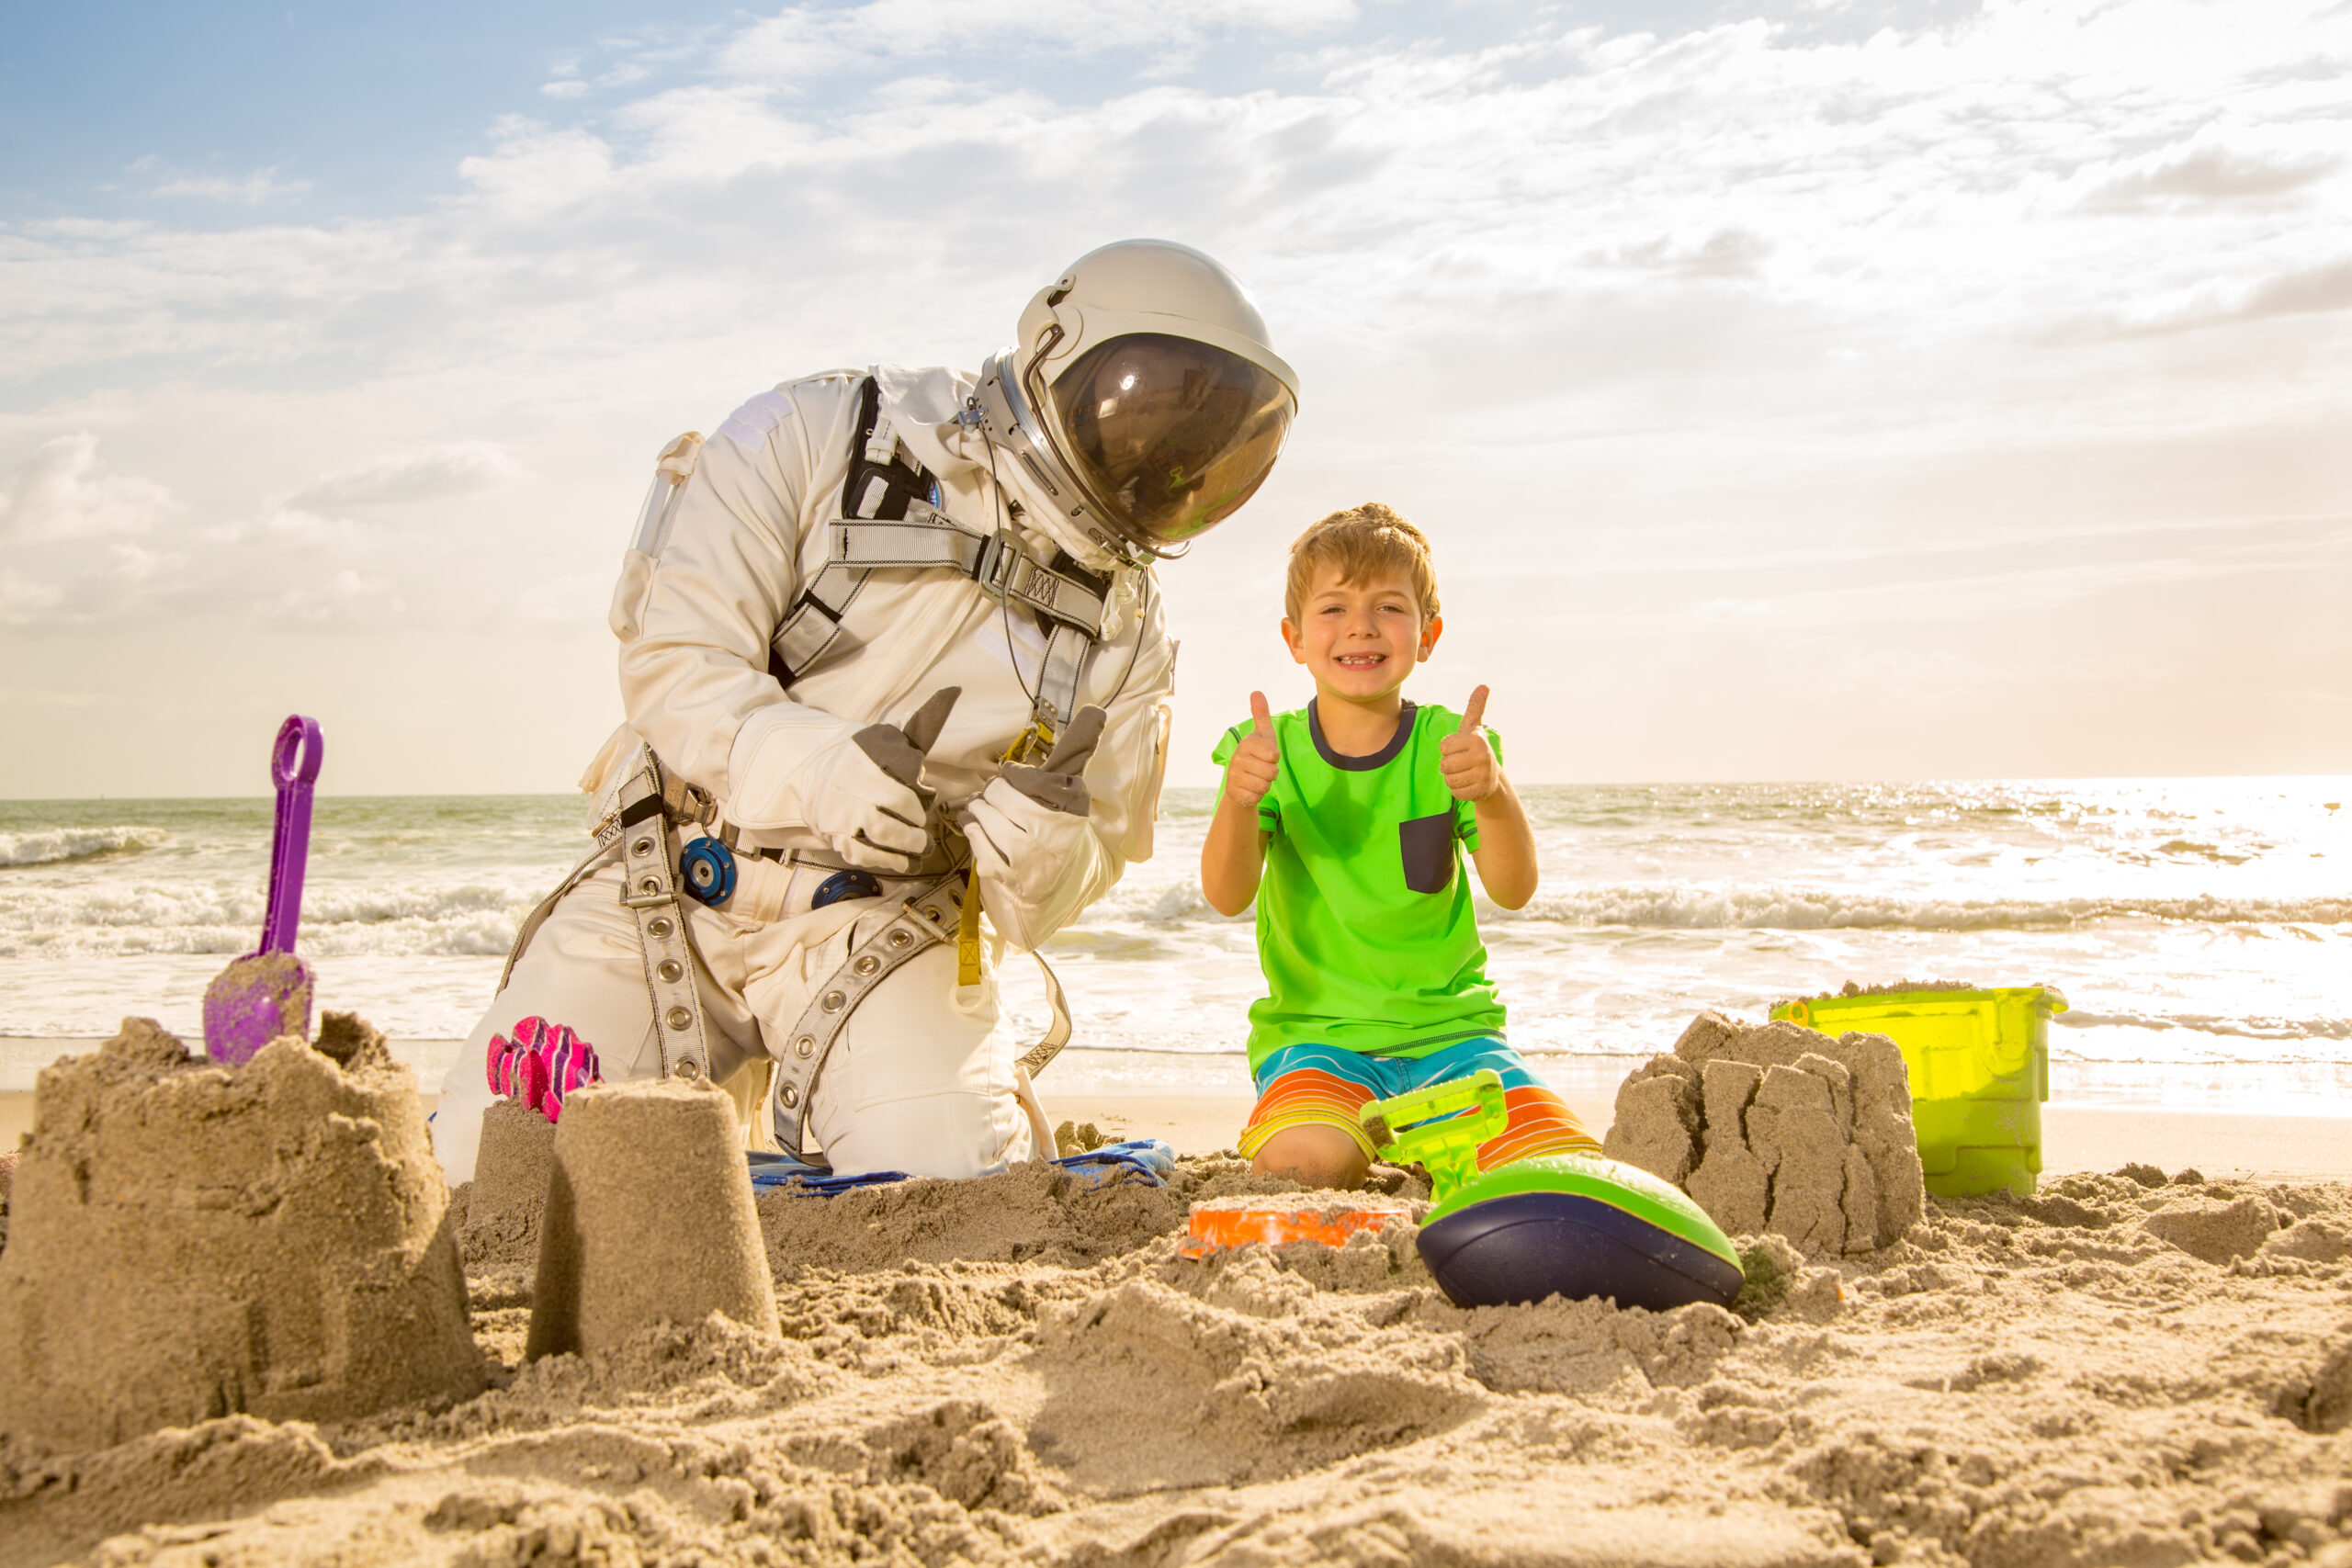 Starman and boy building sand castles on the beach